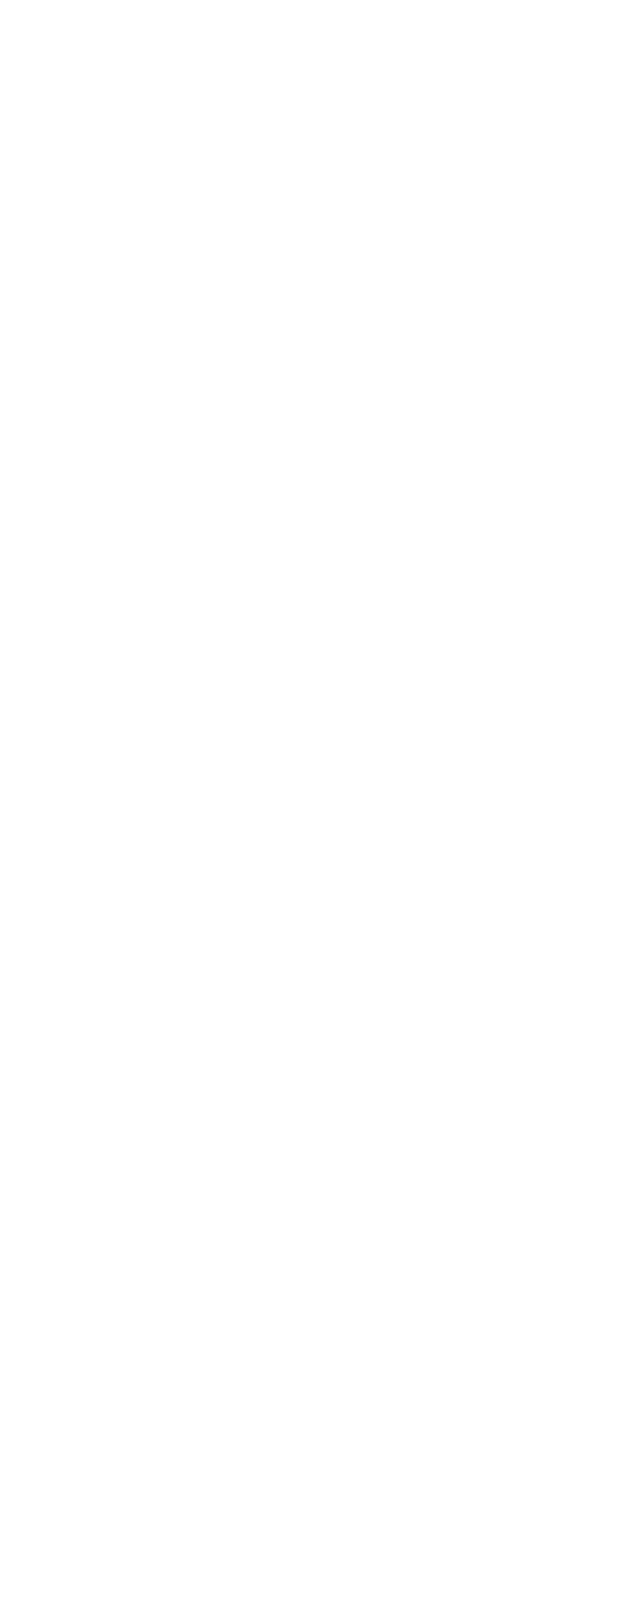 R33-TechnicalDetails